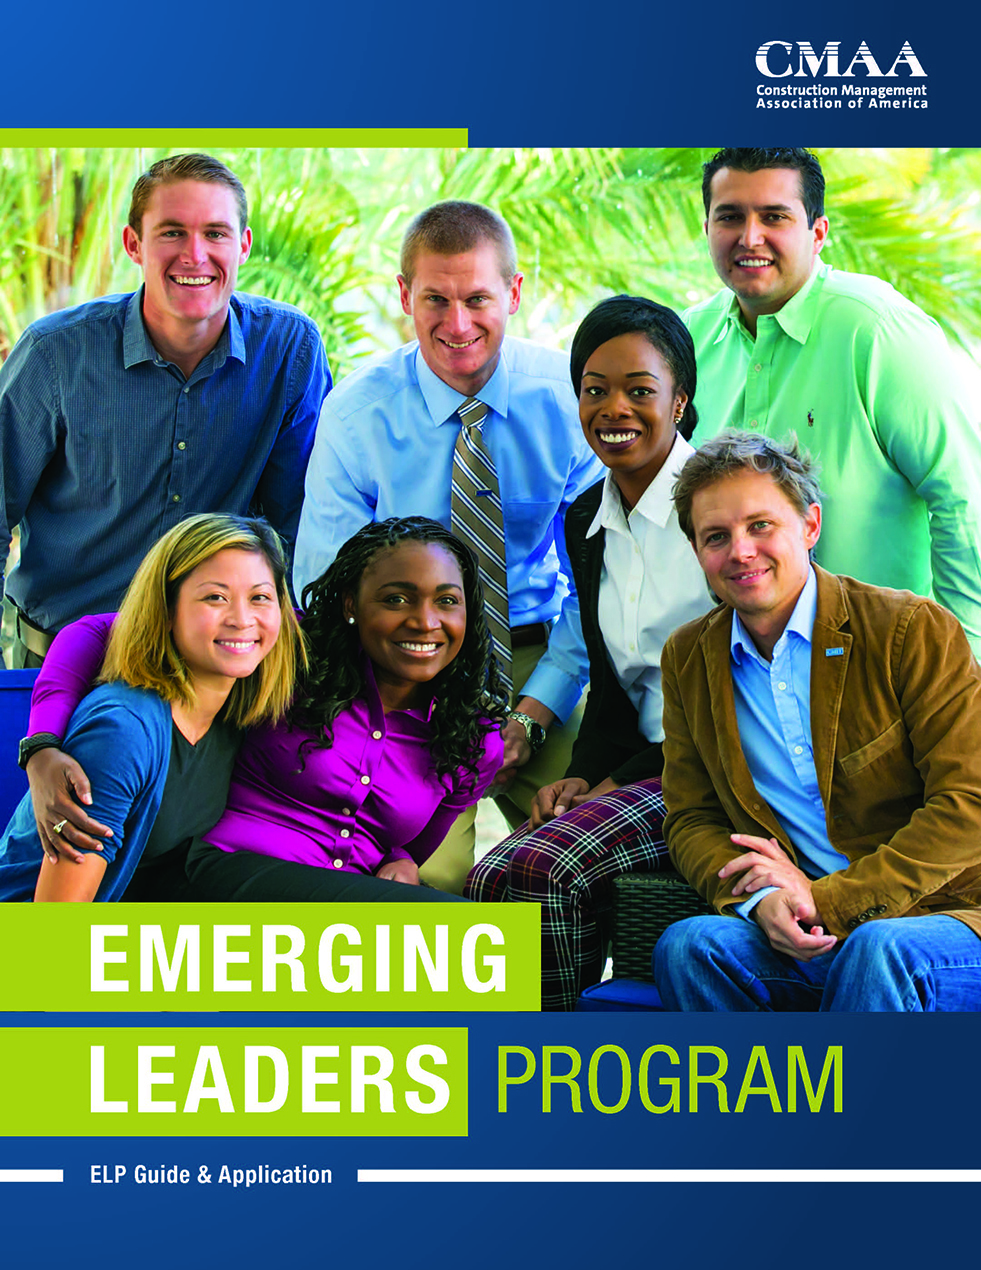 Emerging Leaders Program image